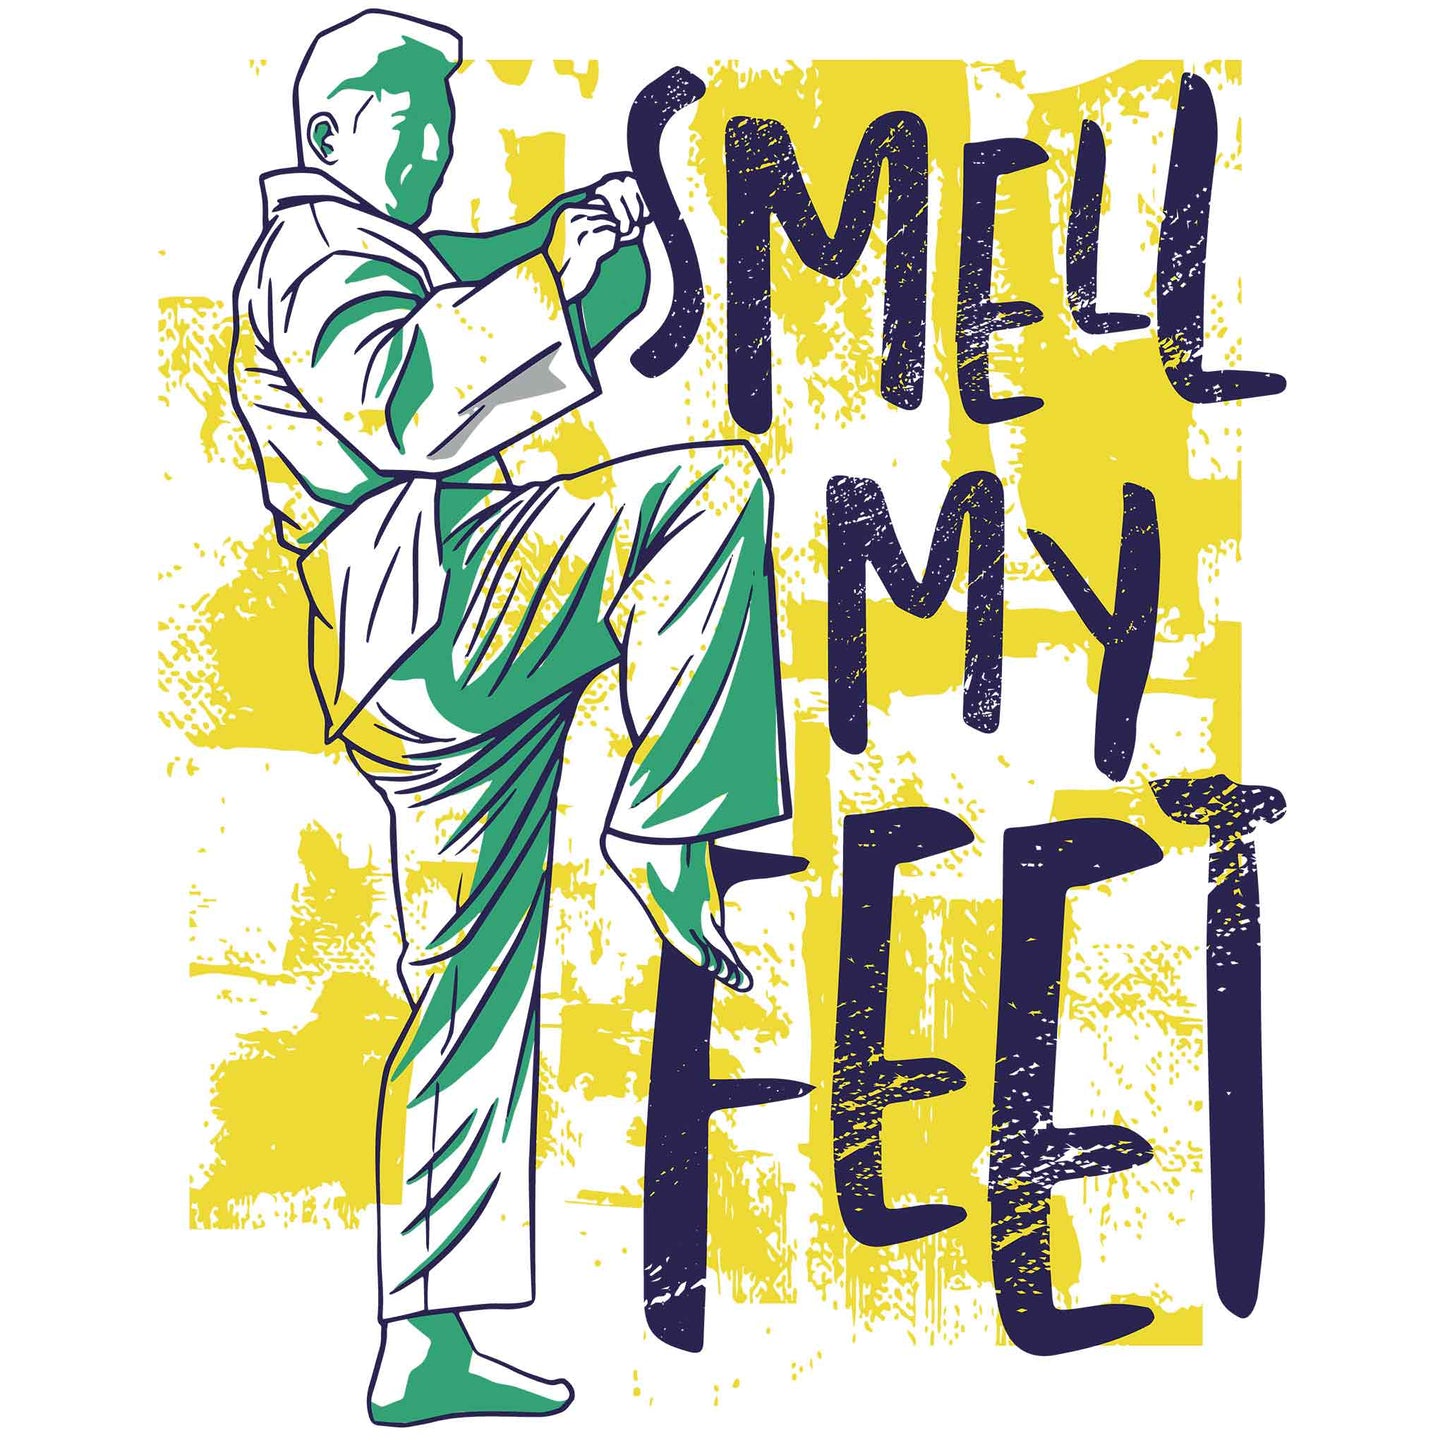 Smell My Feet T-Shirt